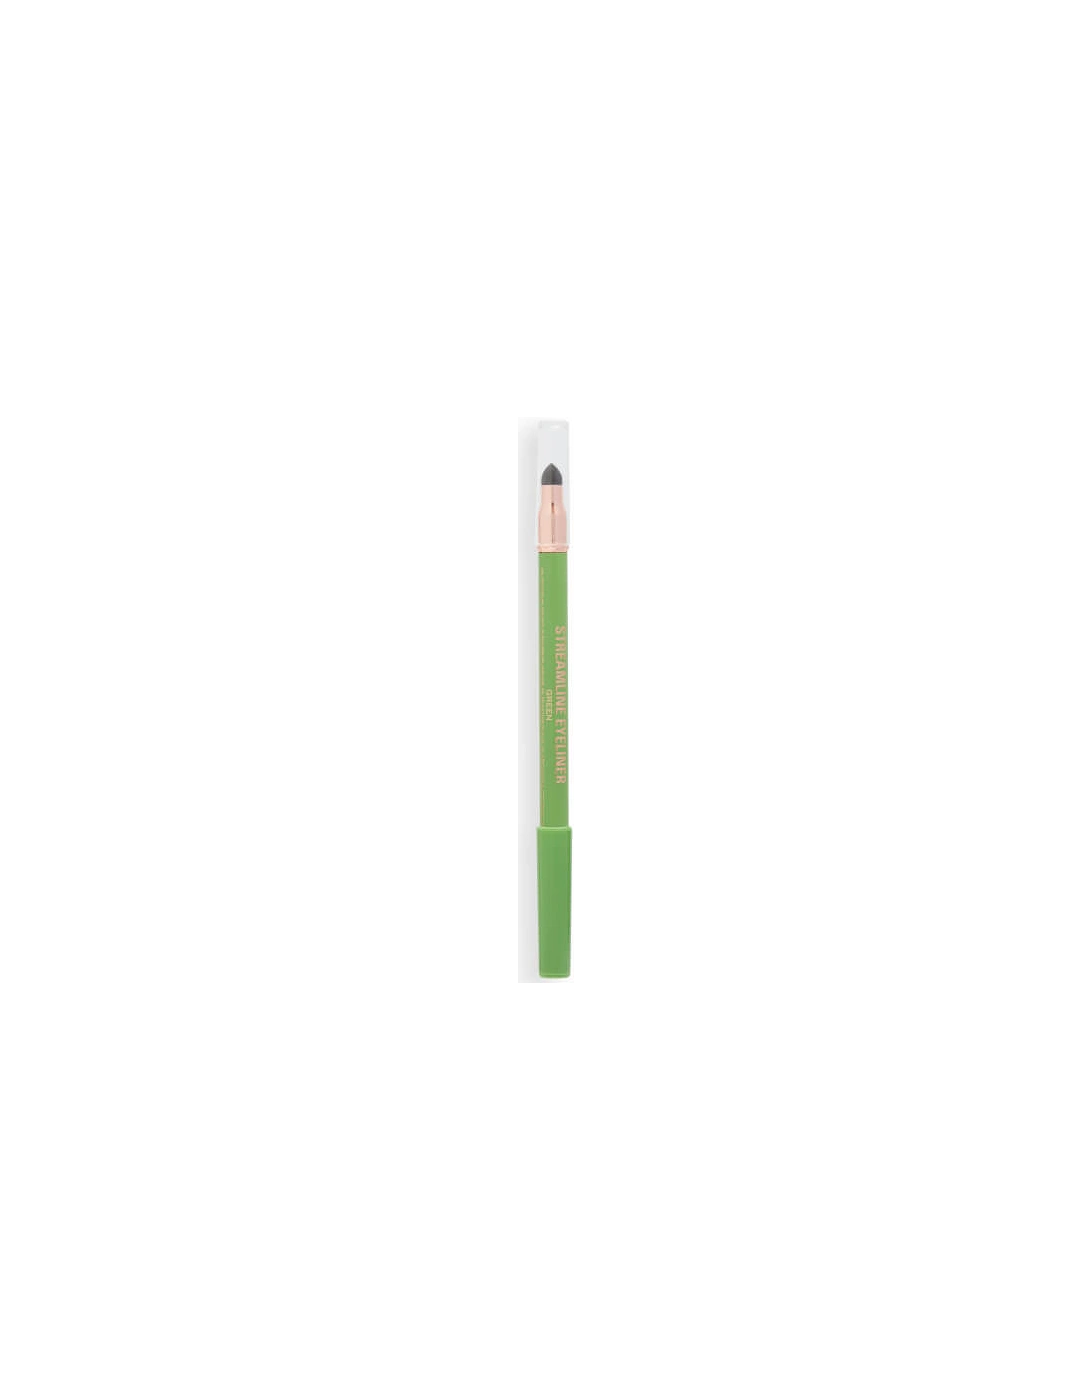 Makeup Streamline Waterline Eyeliner Pencil - Green, 2 of 1